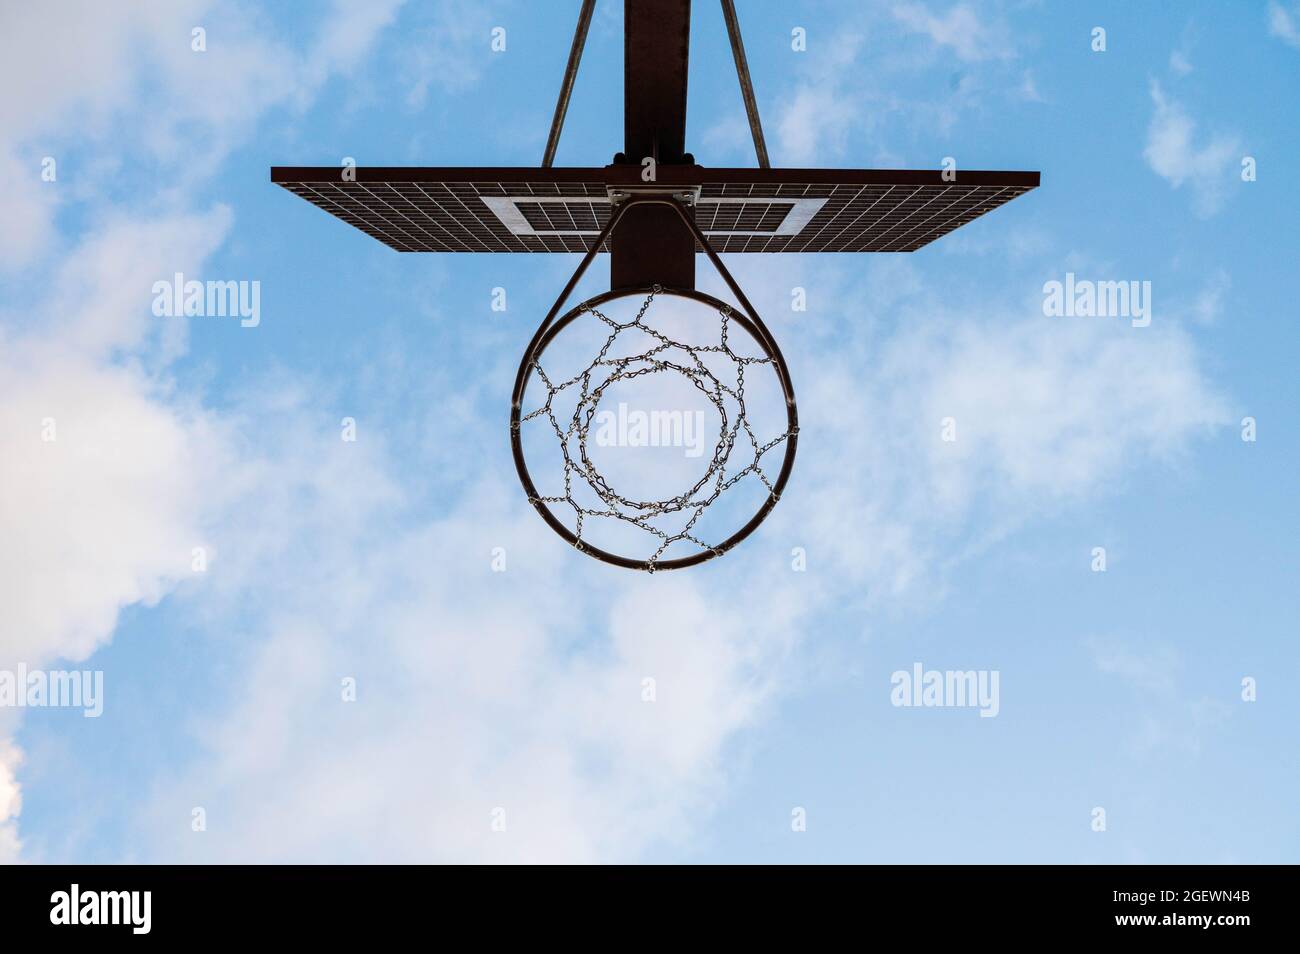 Ansicht von unten auf einen metallischen Street-Basketball-Reifen im Freien mit einem blauen Himmel im Hintergrund. Stockfoto